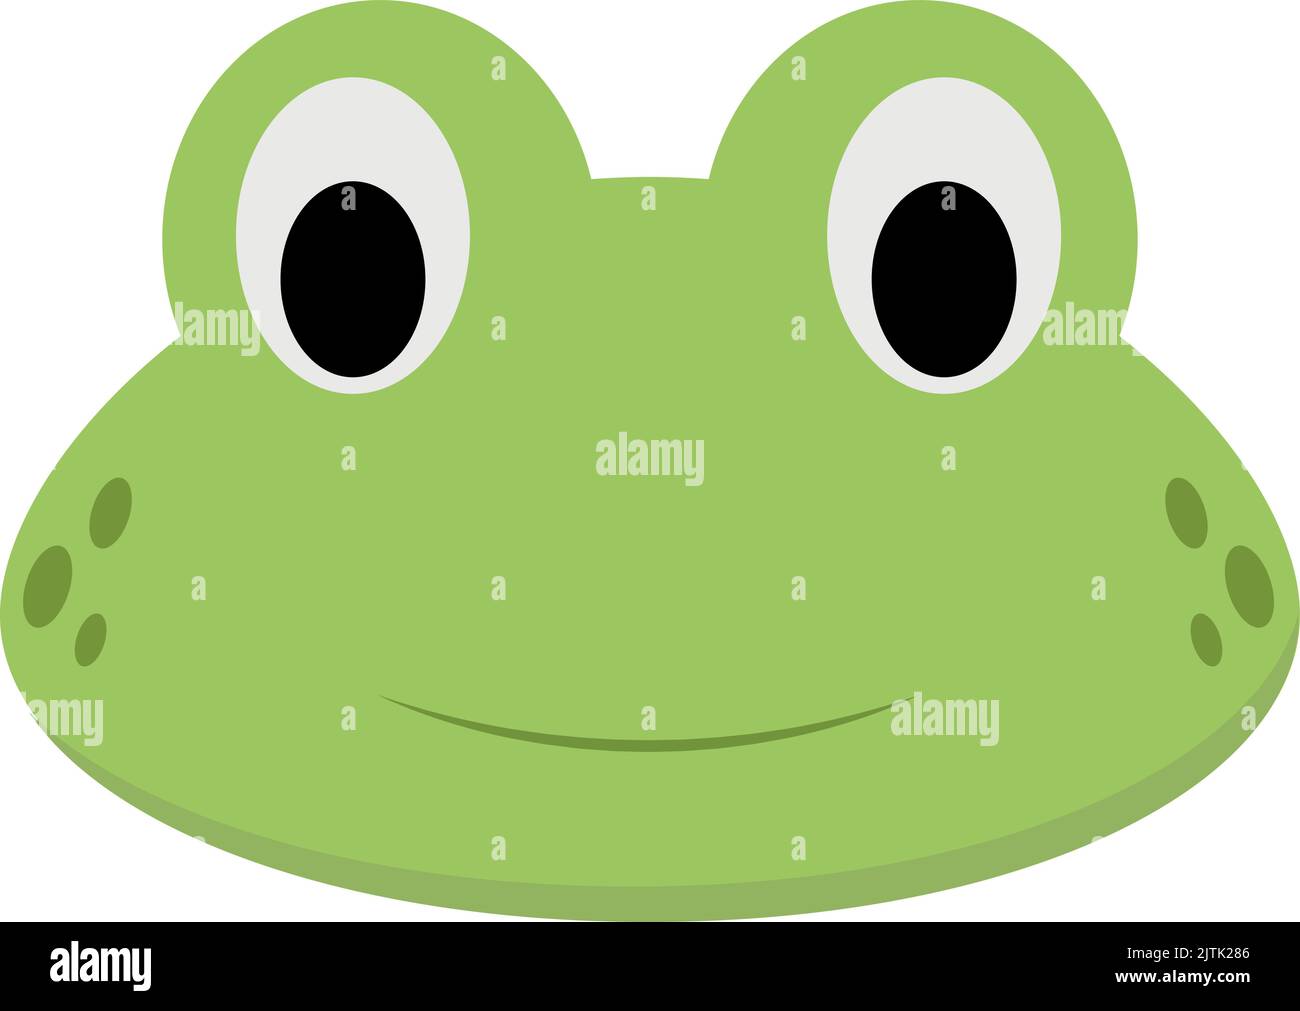 Cara de rana Imágenes recortadas de stock - Alamy